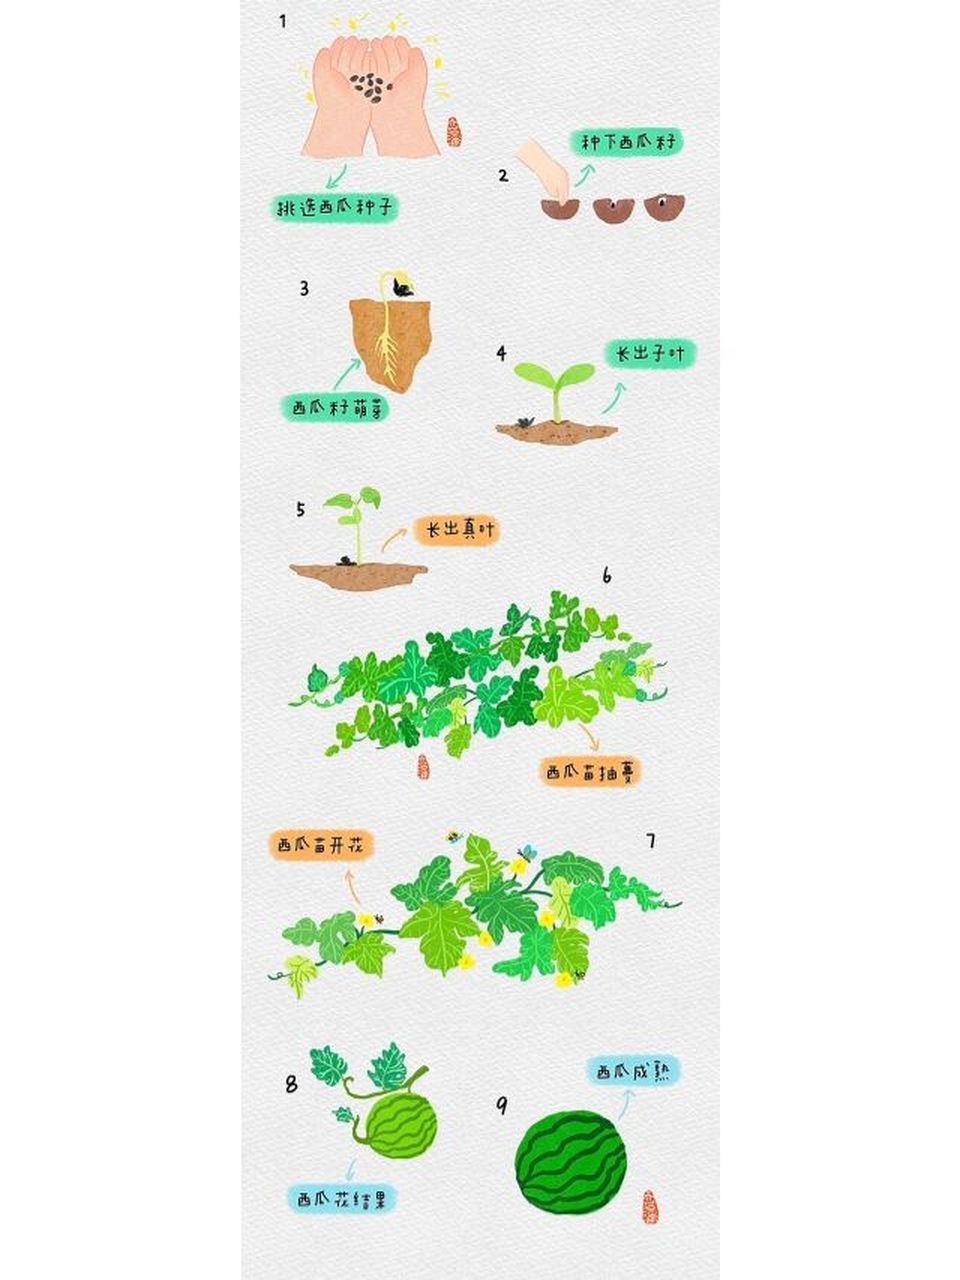 西瓜的生长过程 步骤图片